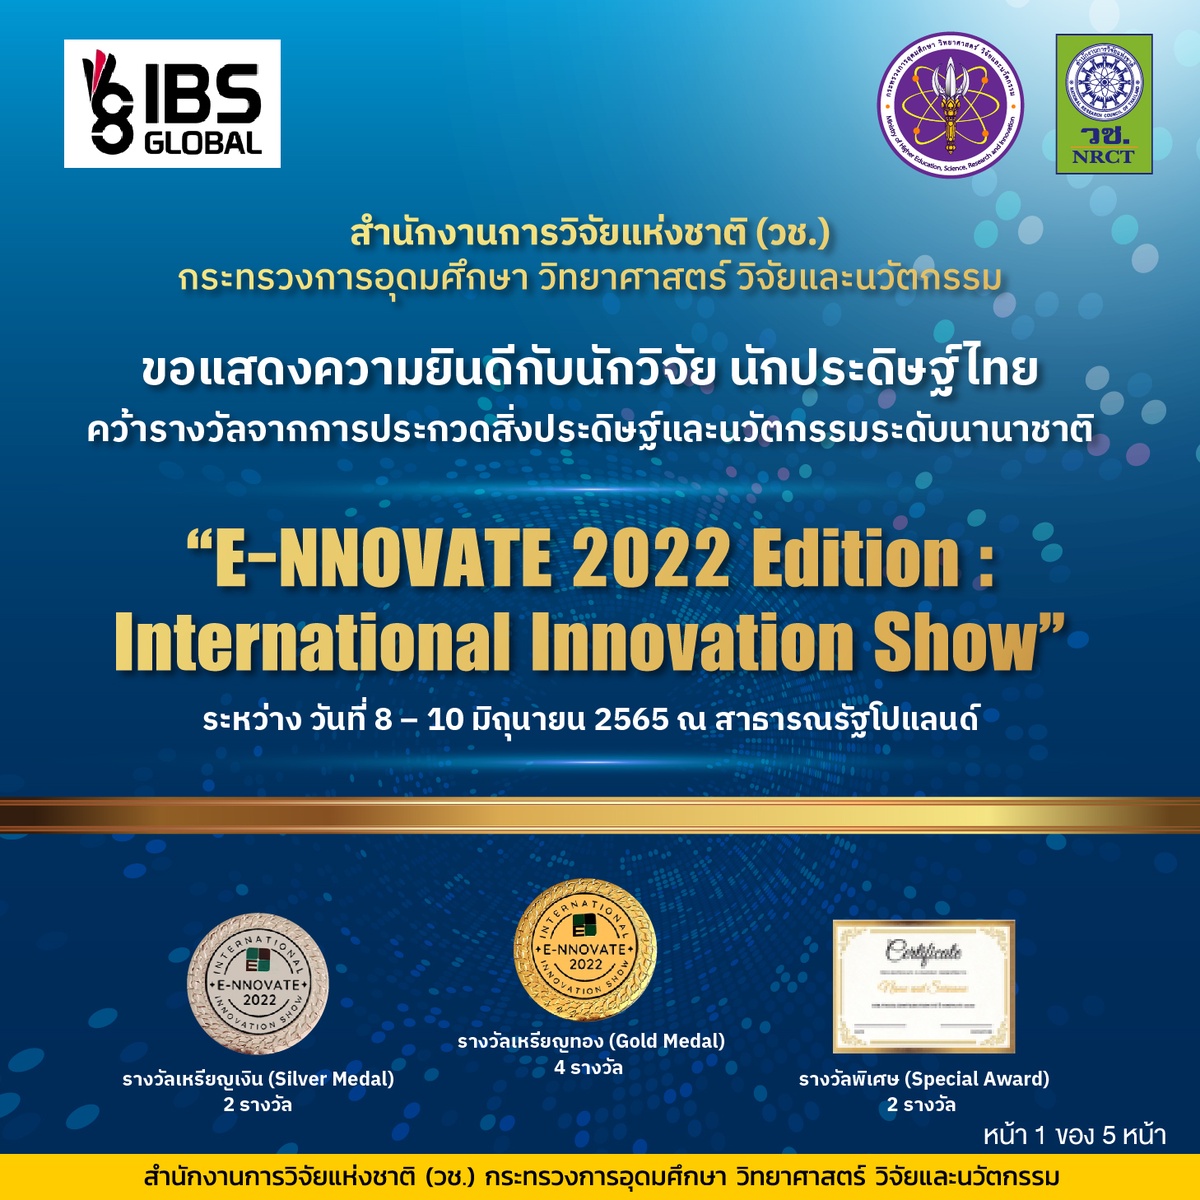 วช. นำคณะนักประดิษฐ์/นักวิจัยไทย คว้ารางวัลการประกวดสิ่งประดิษฐ์และนวัตกรรมระดับนานาชาติในงาน E-NNOVATE 2022